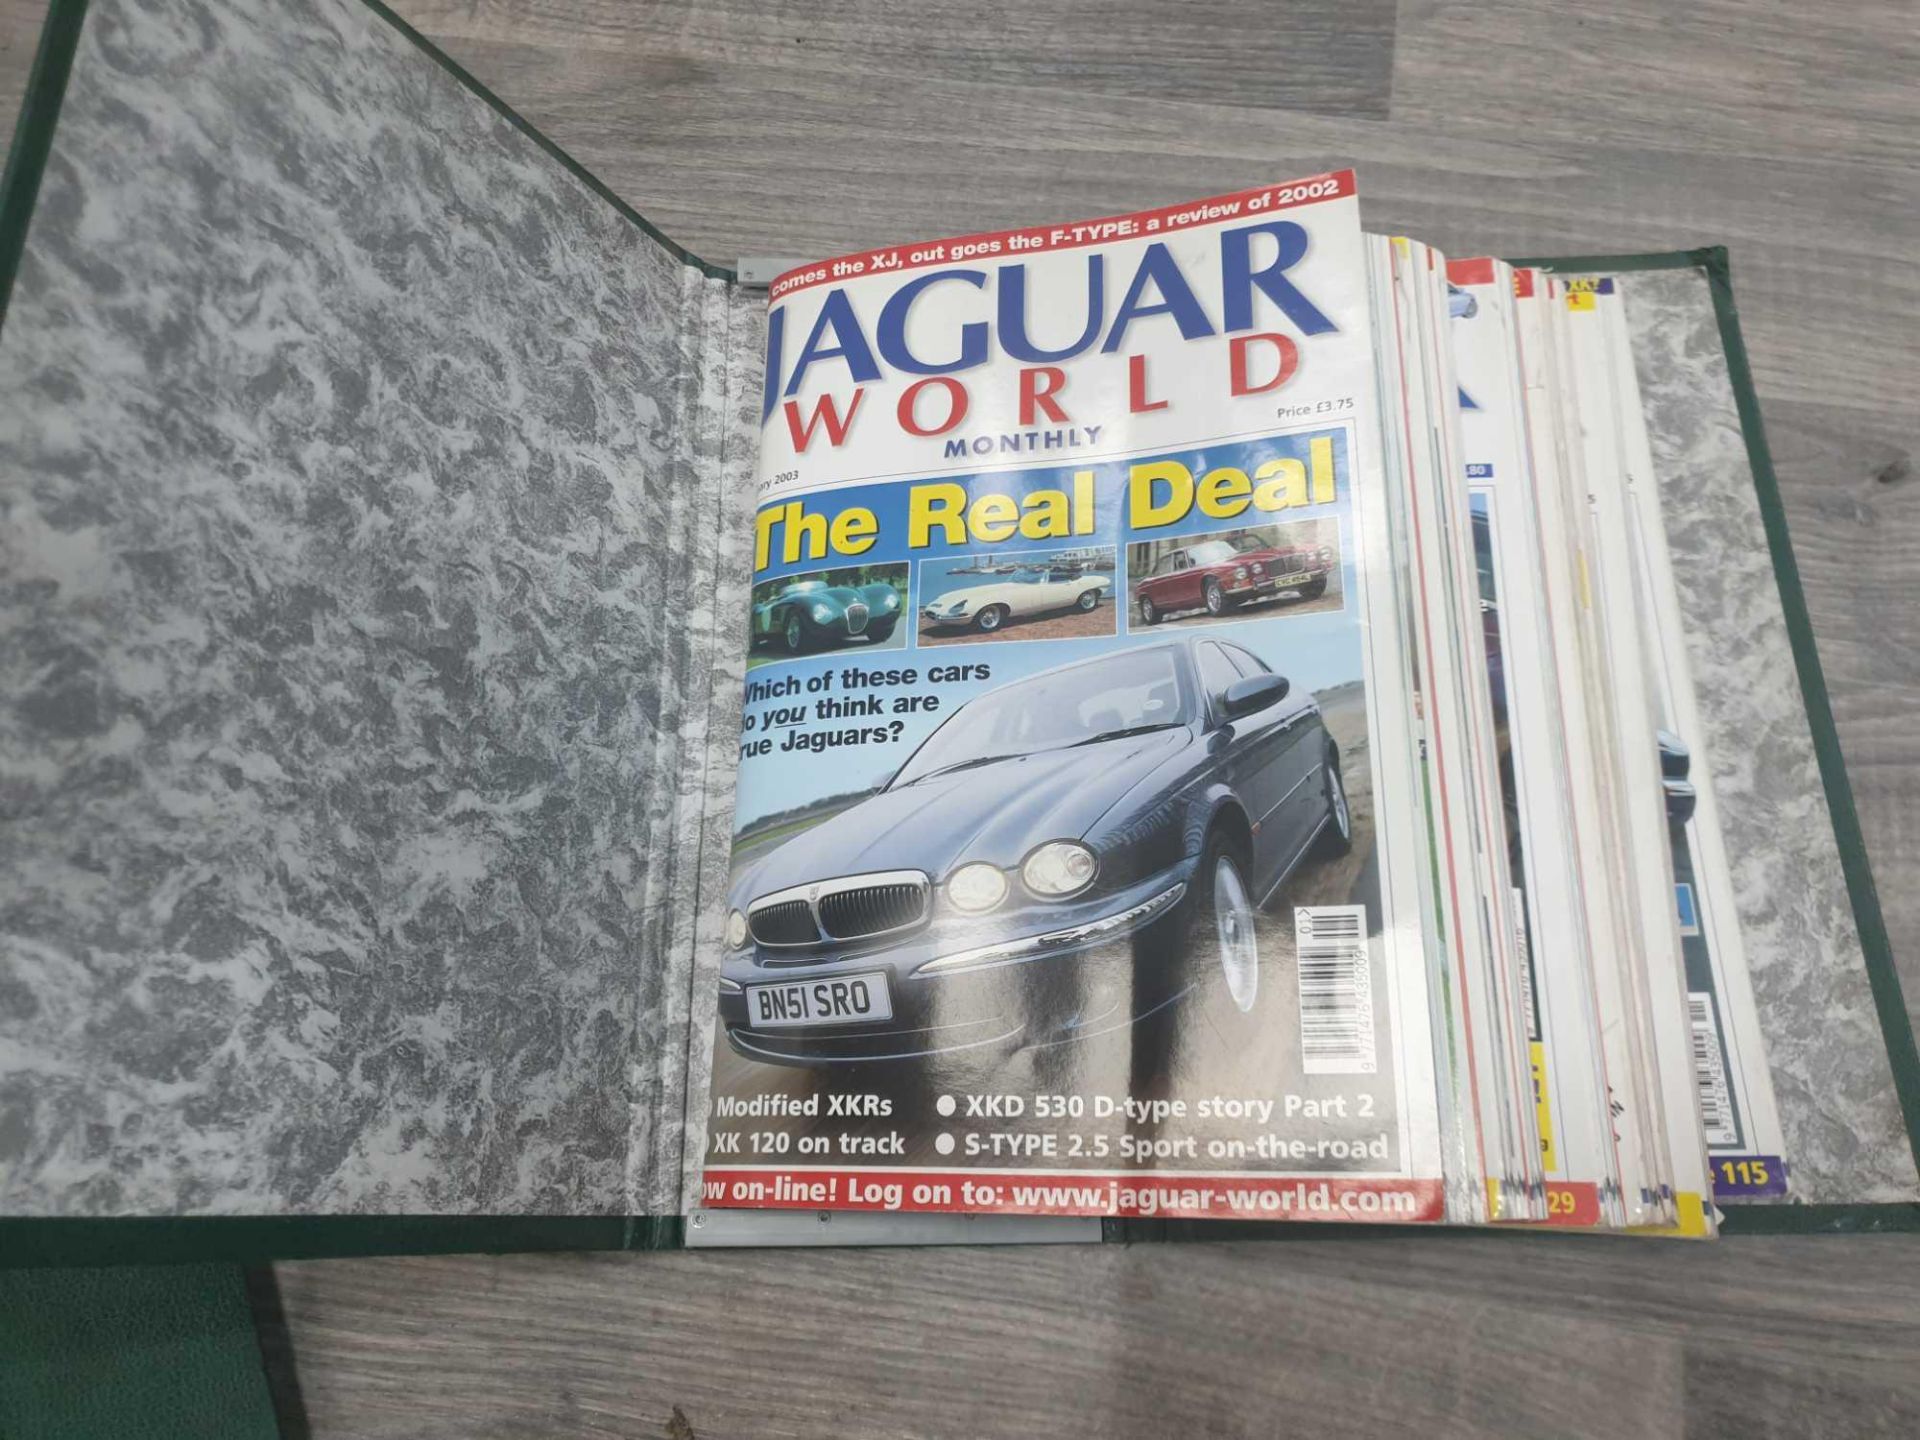 Various Jaguar dealer showroom posters and literature - Image 24 of 24